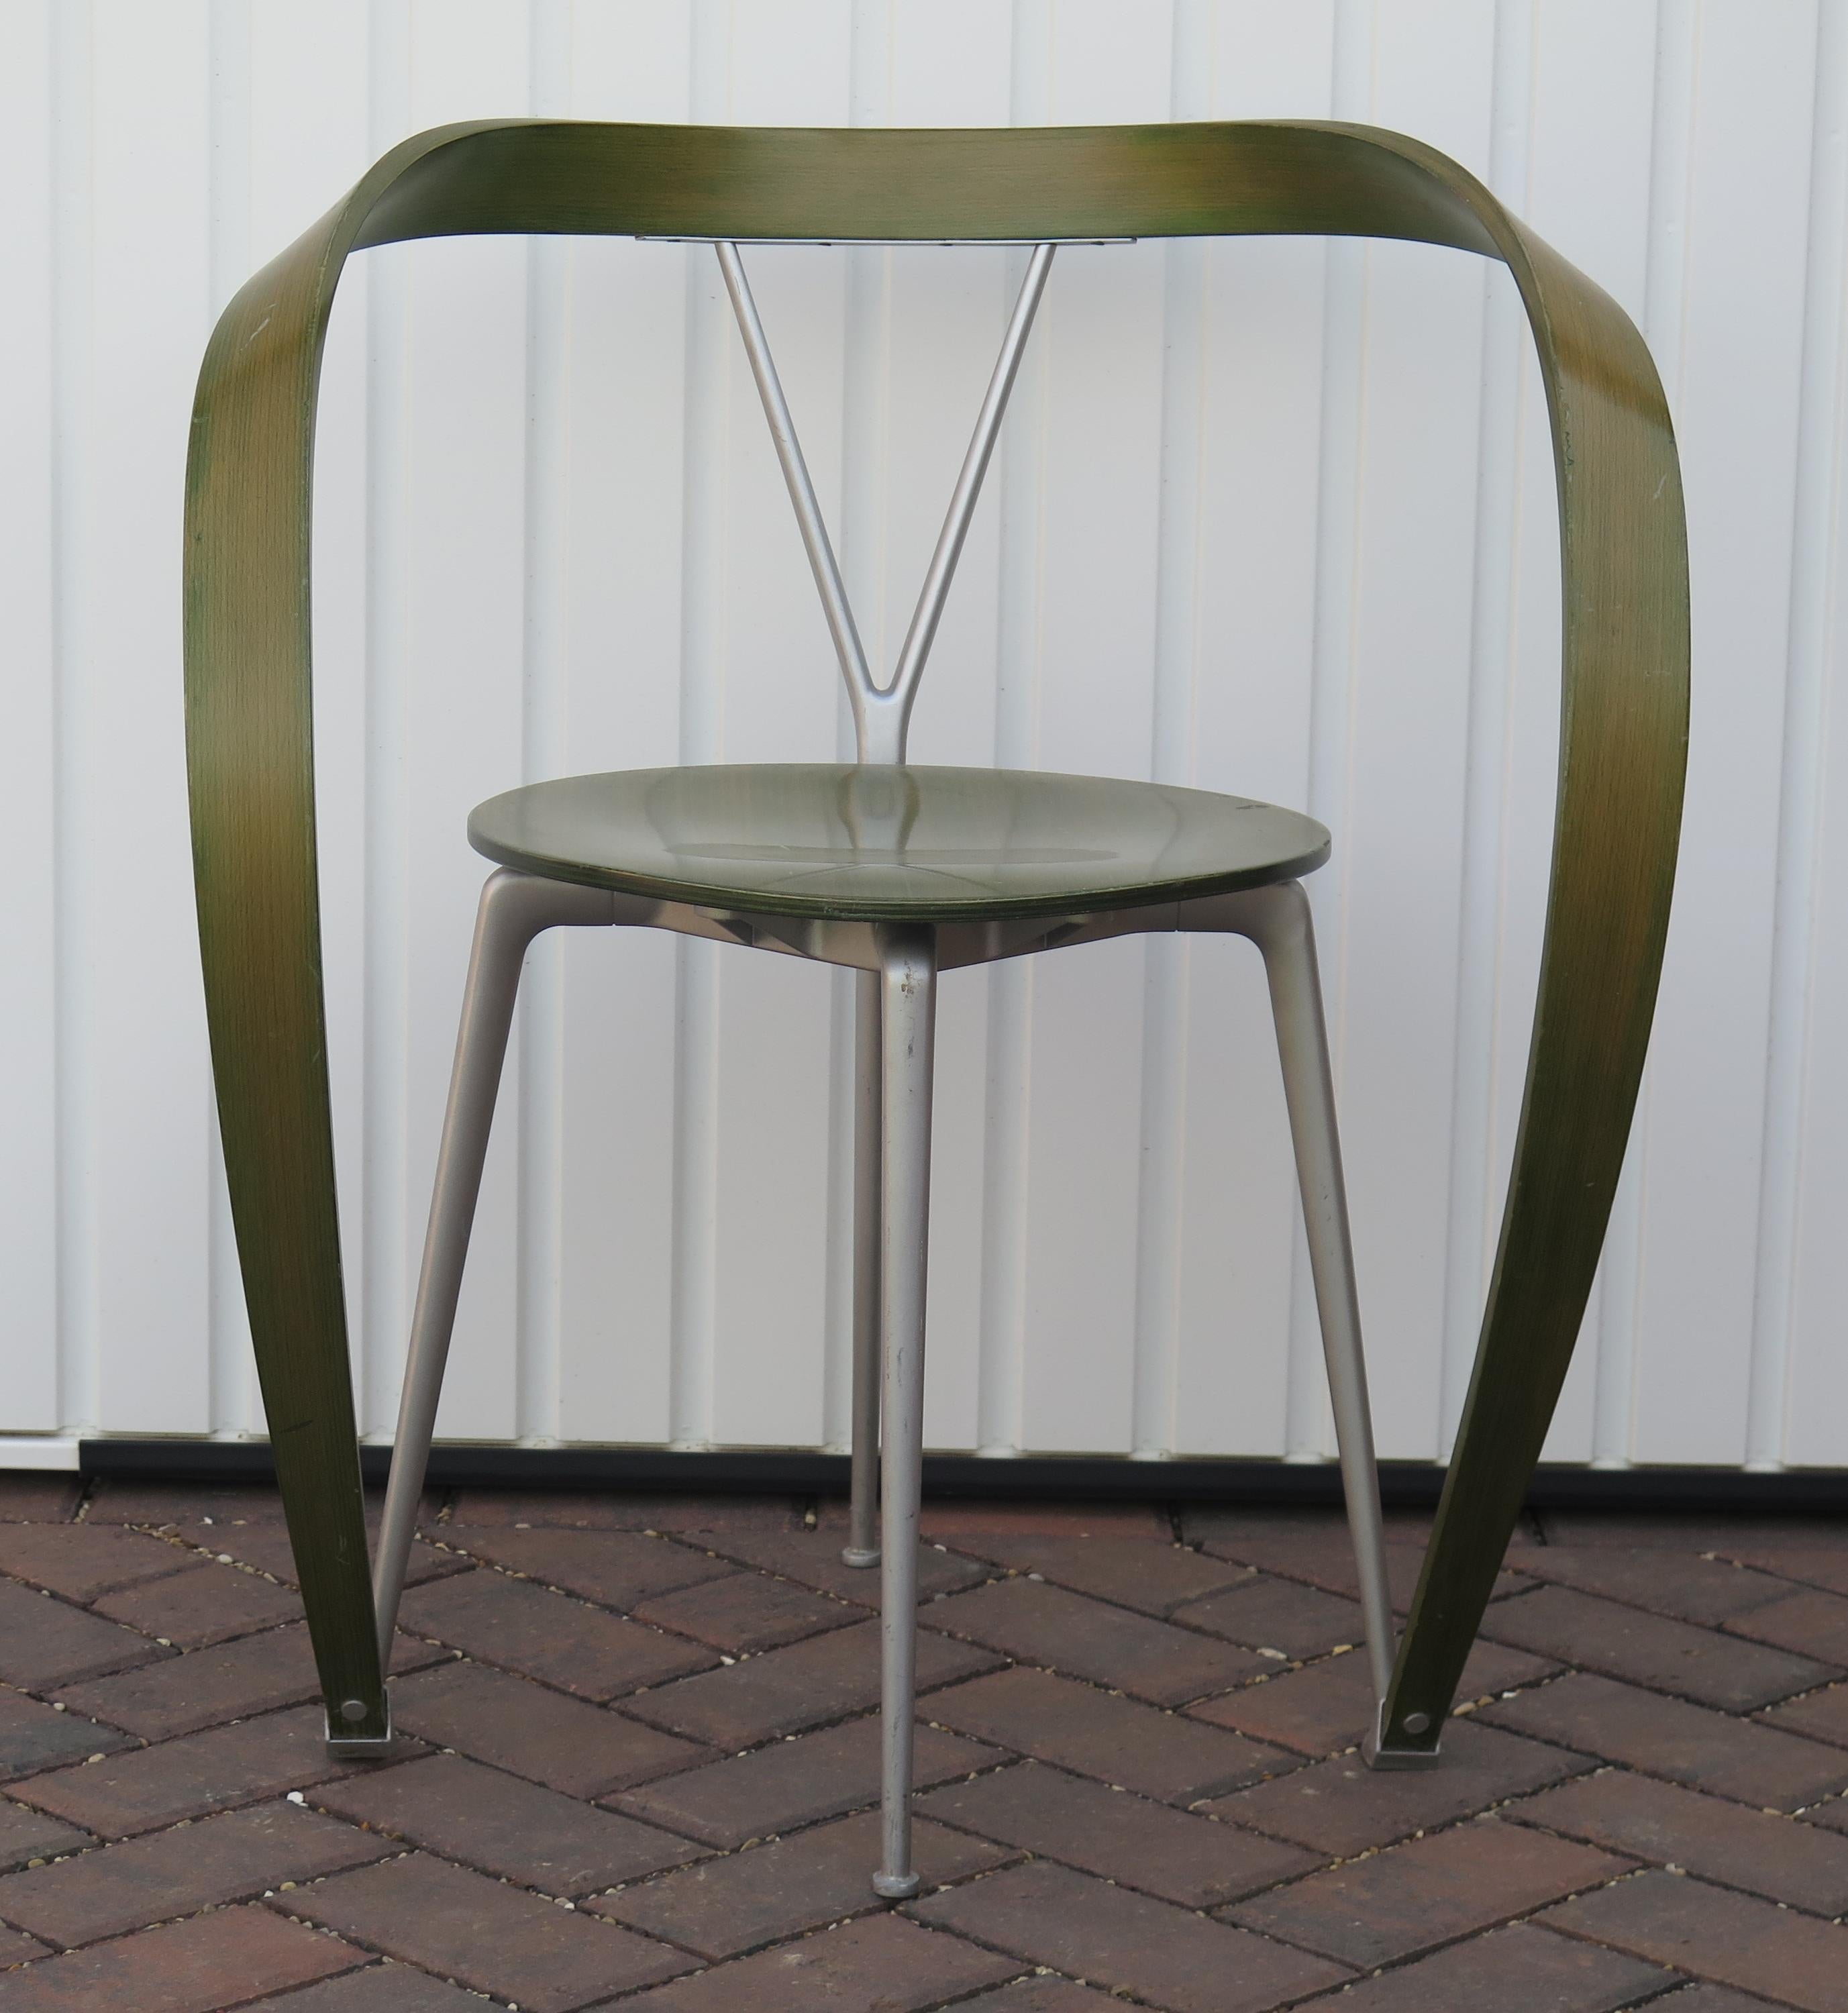 Il s'agit d'un fauteuil iconique conçu par Andrea Branzi pour la société italienne Cassina et datant de la fin du XXe siècle, Circa 1993. 

La chaise est dotée d'un design/One inversé et s'appelle 